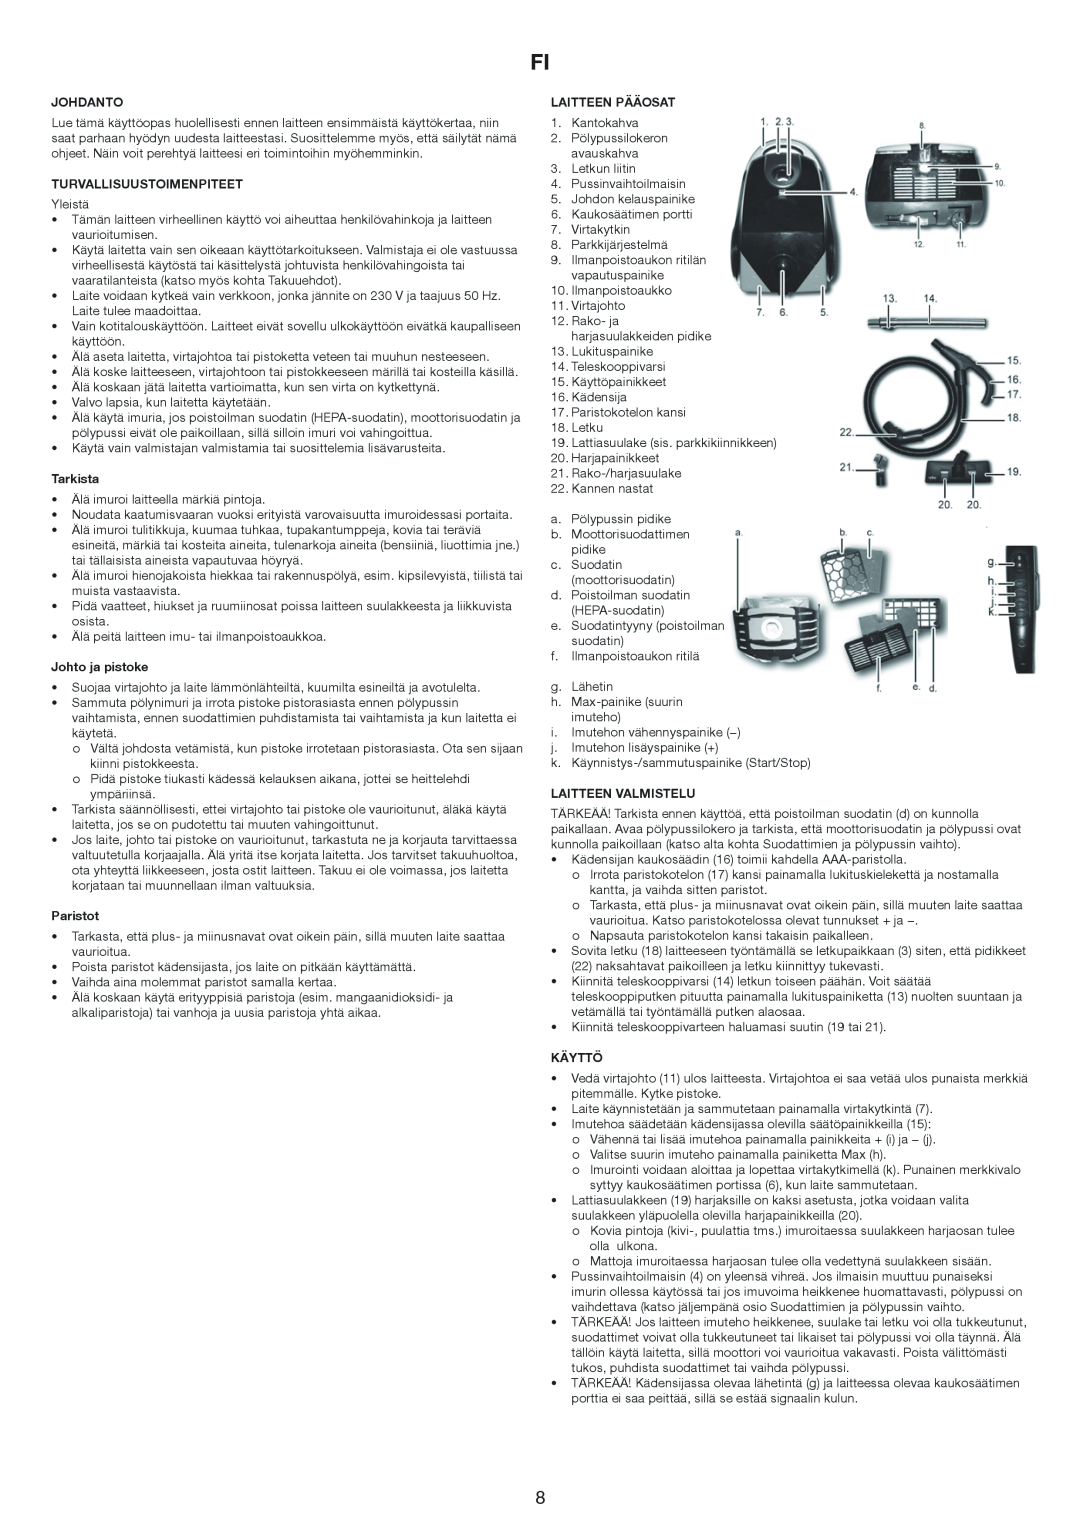 Melissa 640-174 manual Johdanto, Turvallisuustoimenpiteet, Tarkista, Johto ja pistoke, Paristot, Laitteen Pääosat, Käyttö 